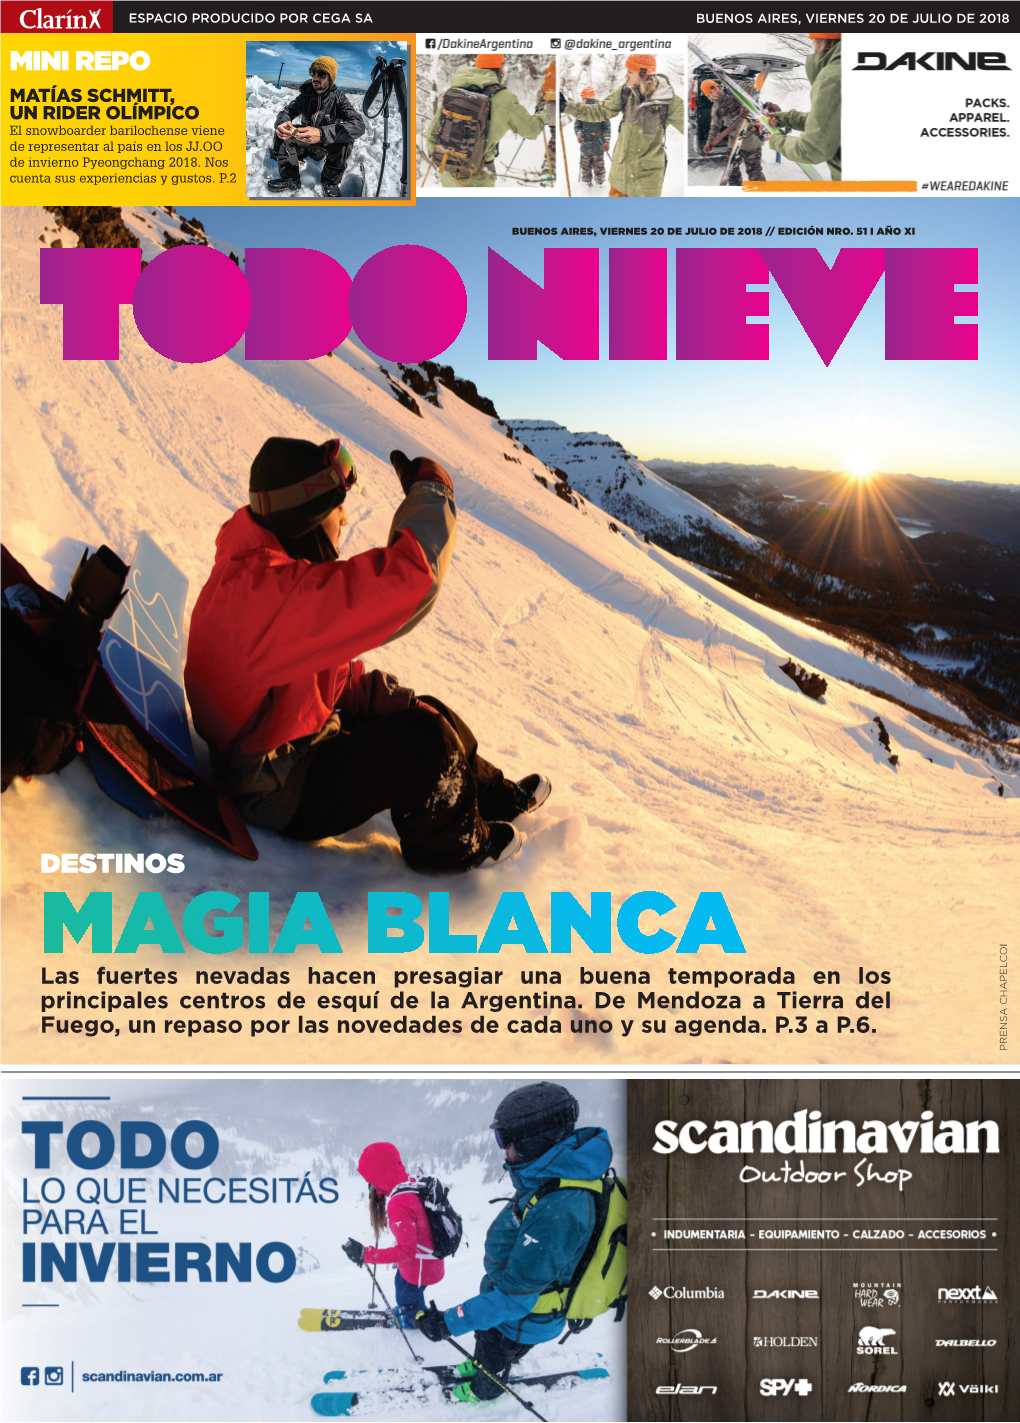 MAGIA BLANCA I Las Fuertes Nevadas Hacen Presagiar Una Buena Temporada En Los Principales Centros De Esquí De La Argentina